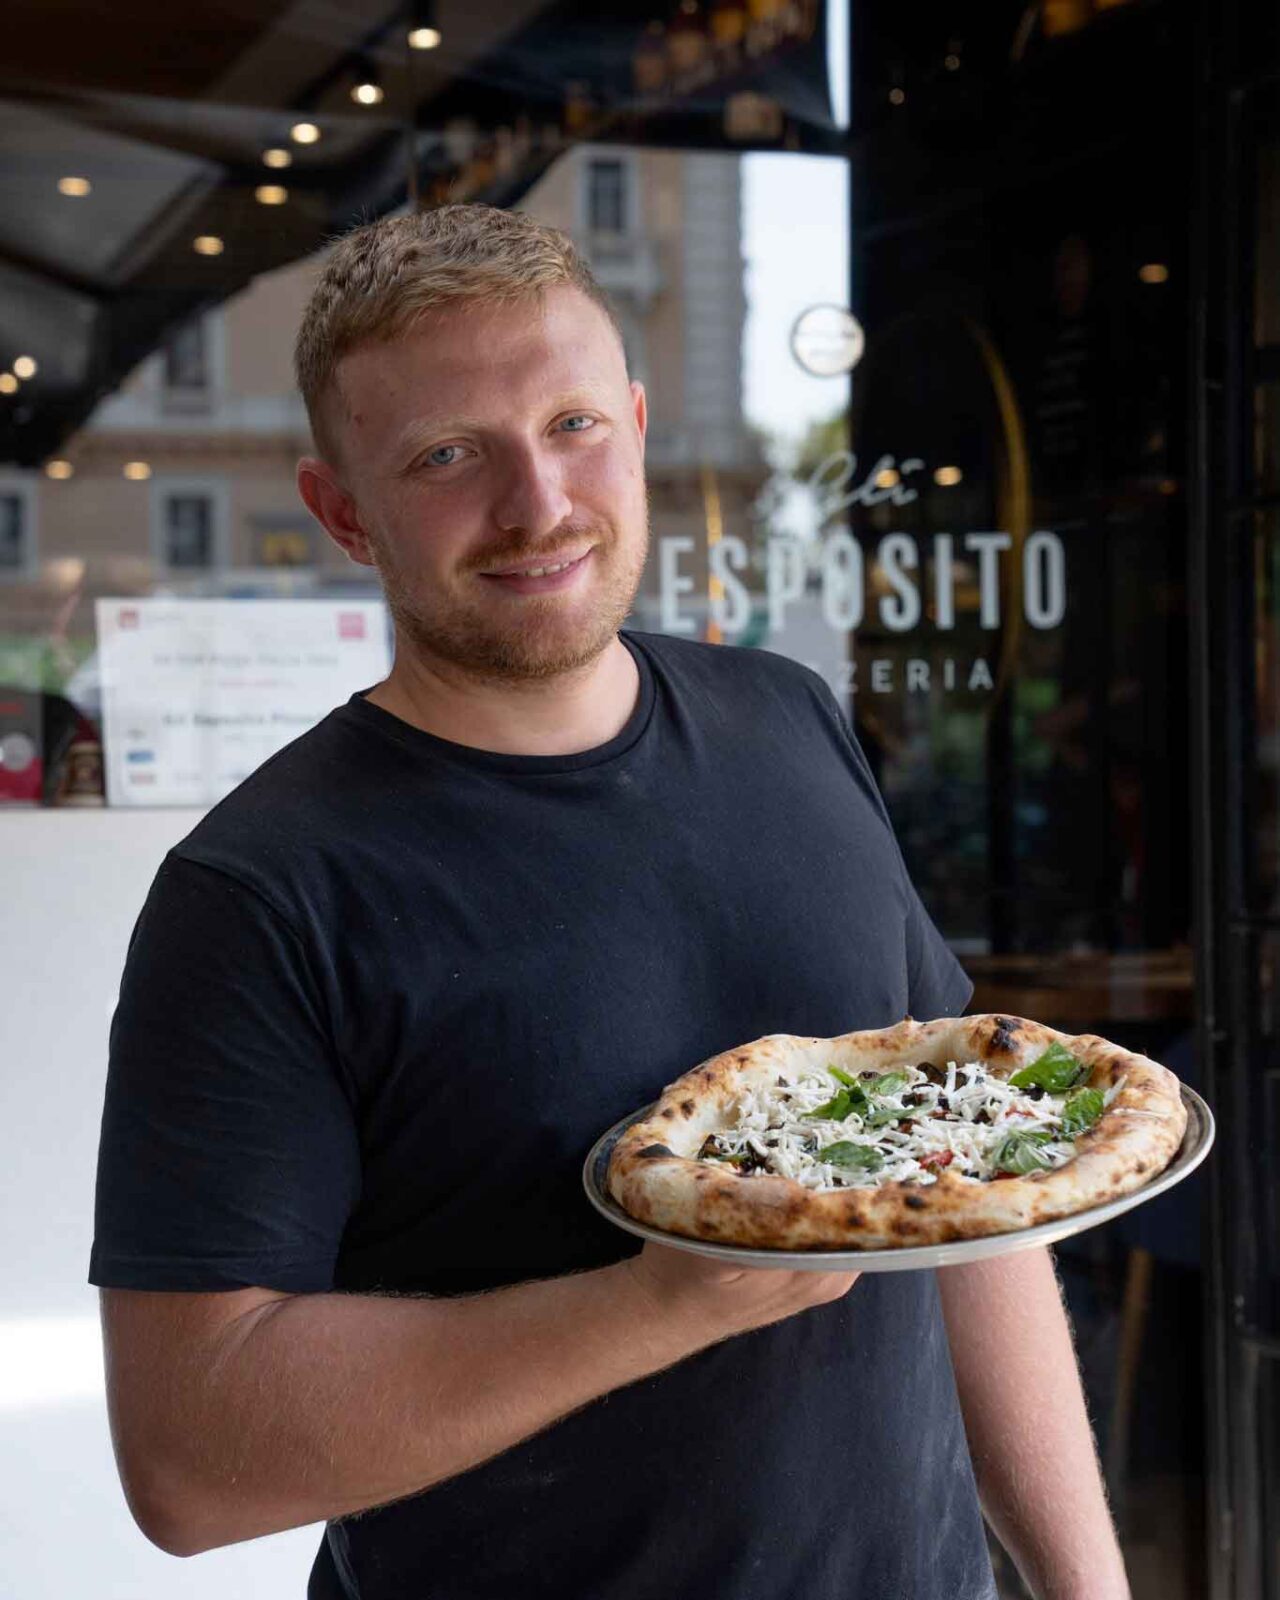 migliori pizzerie di Salerno: Gli Esposito qualificata